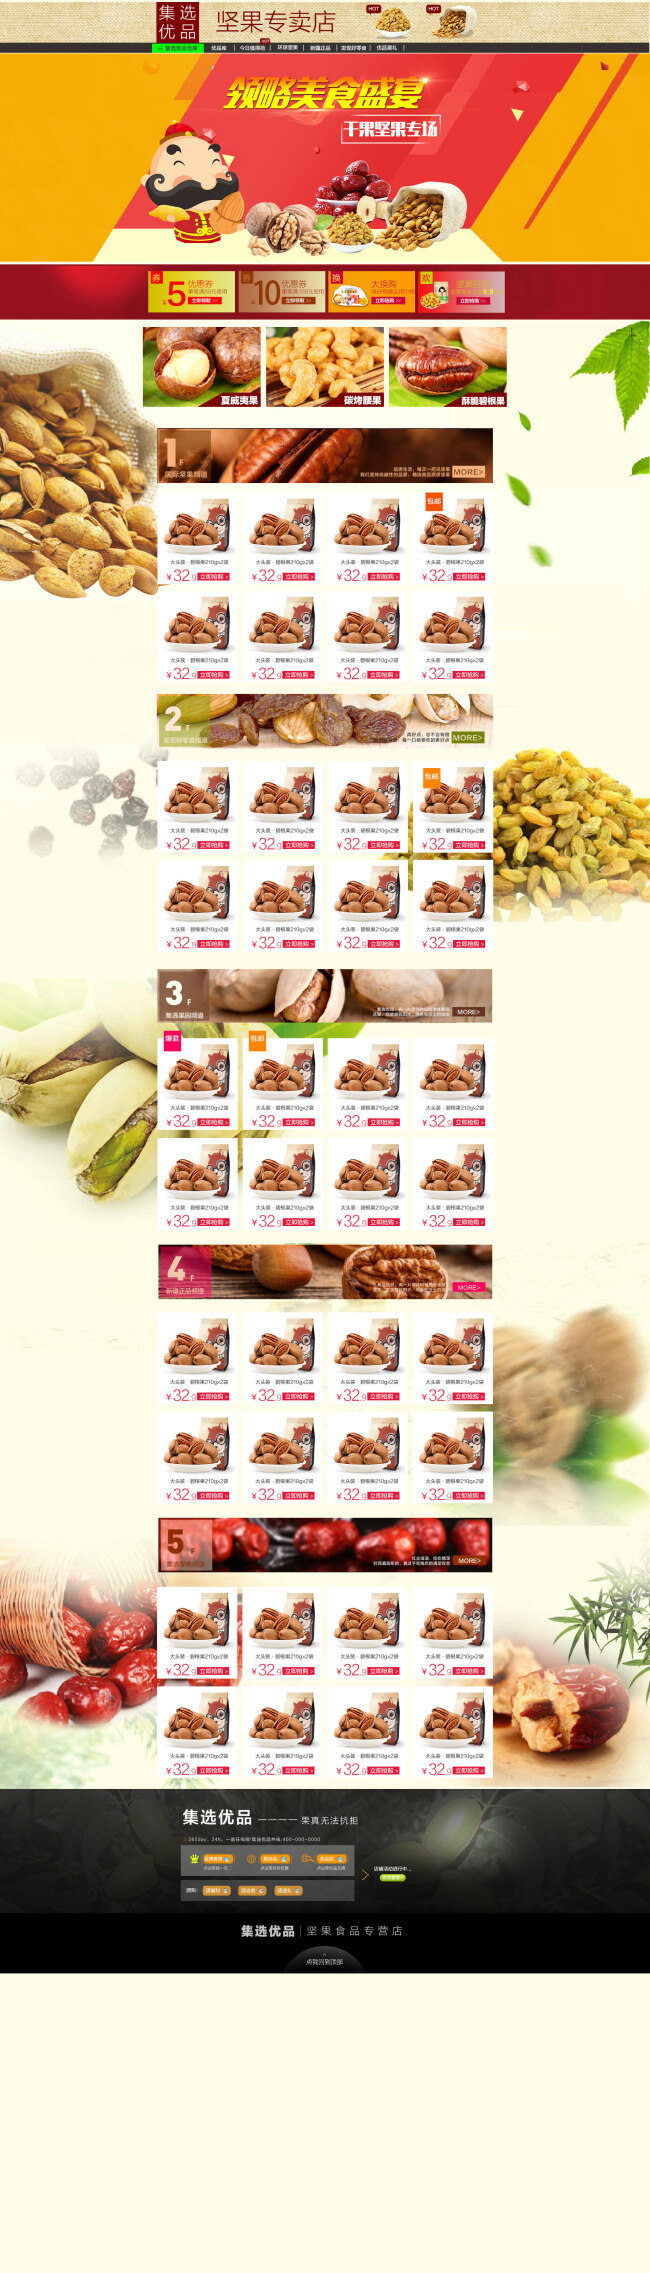 坚果 食品 首页 排版 促销 页面设计 海报 白色